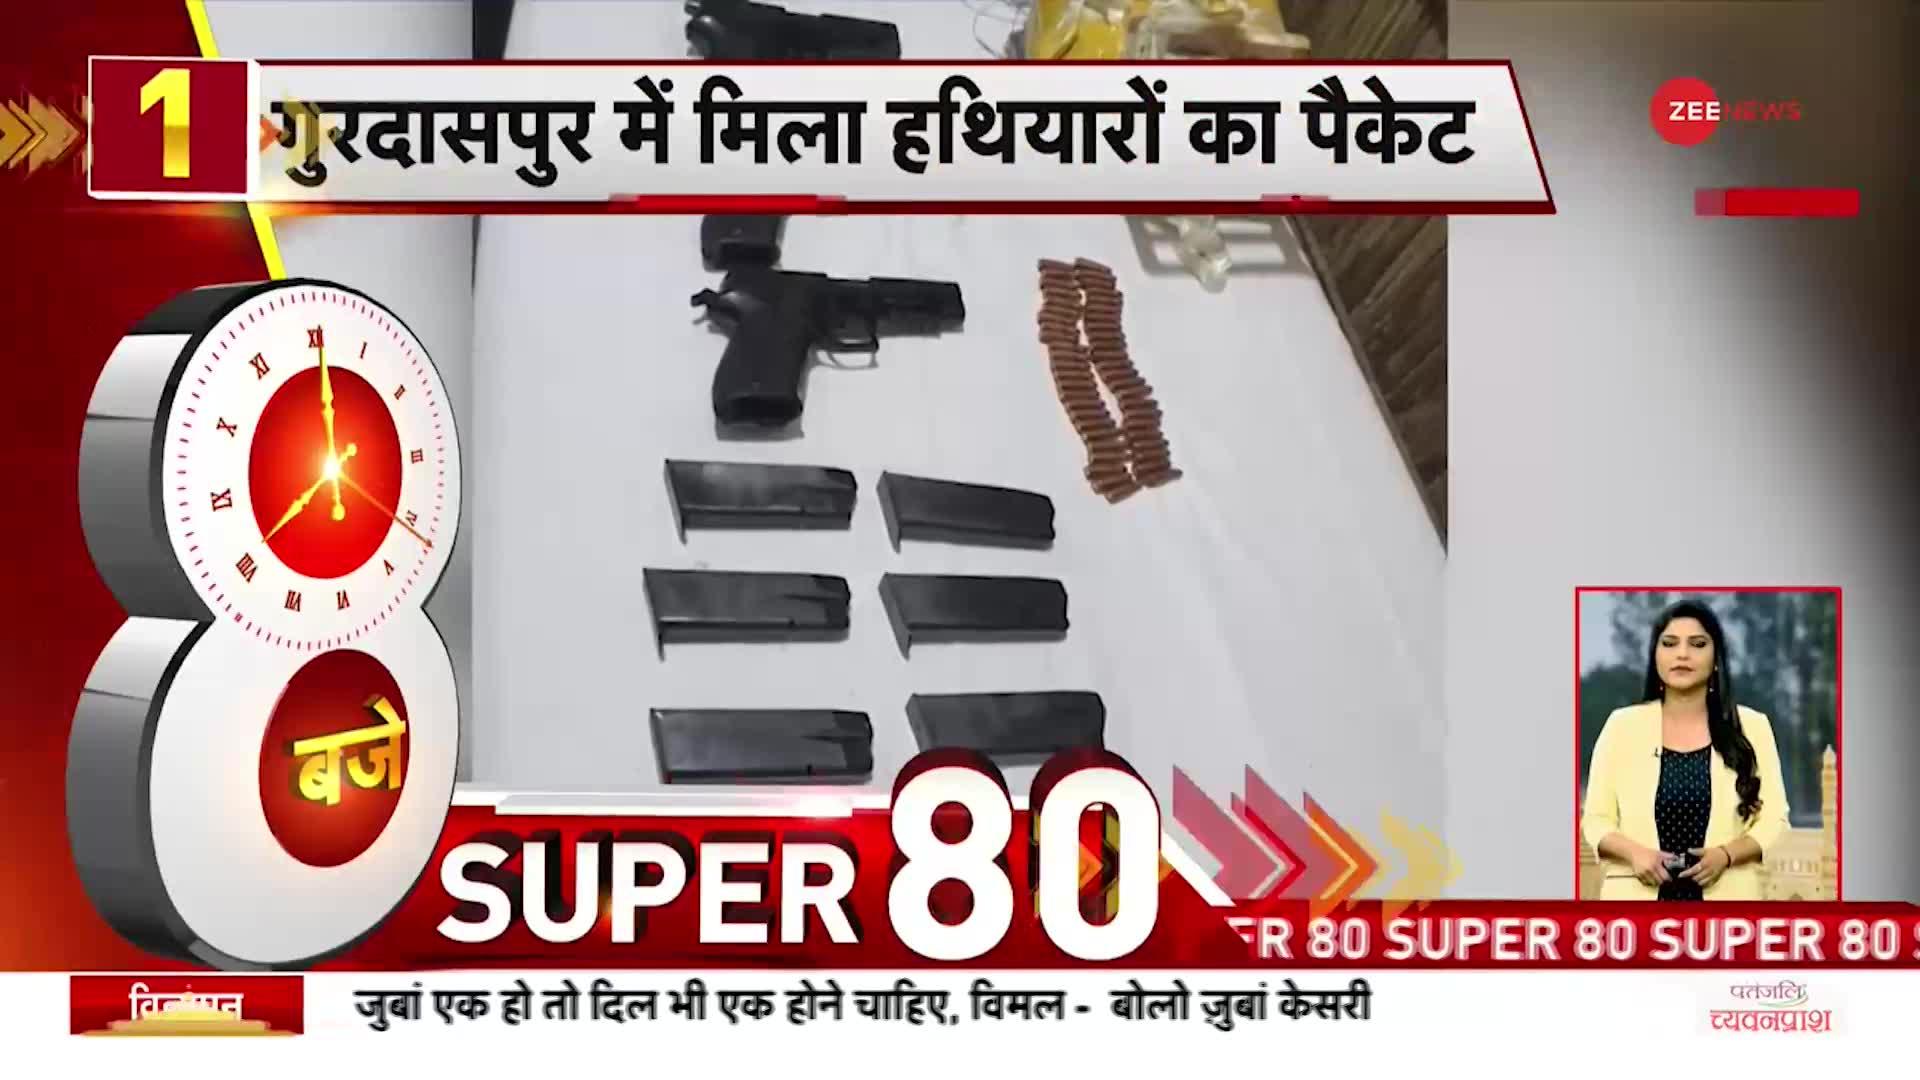 SUPER 80: Punjab के Gurdaspur में Pakistan की Drone वाली साज़िश नाकाम, हथियारों का पैकेट बरामद